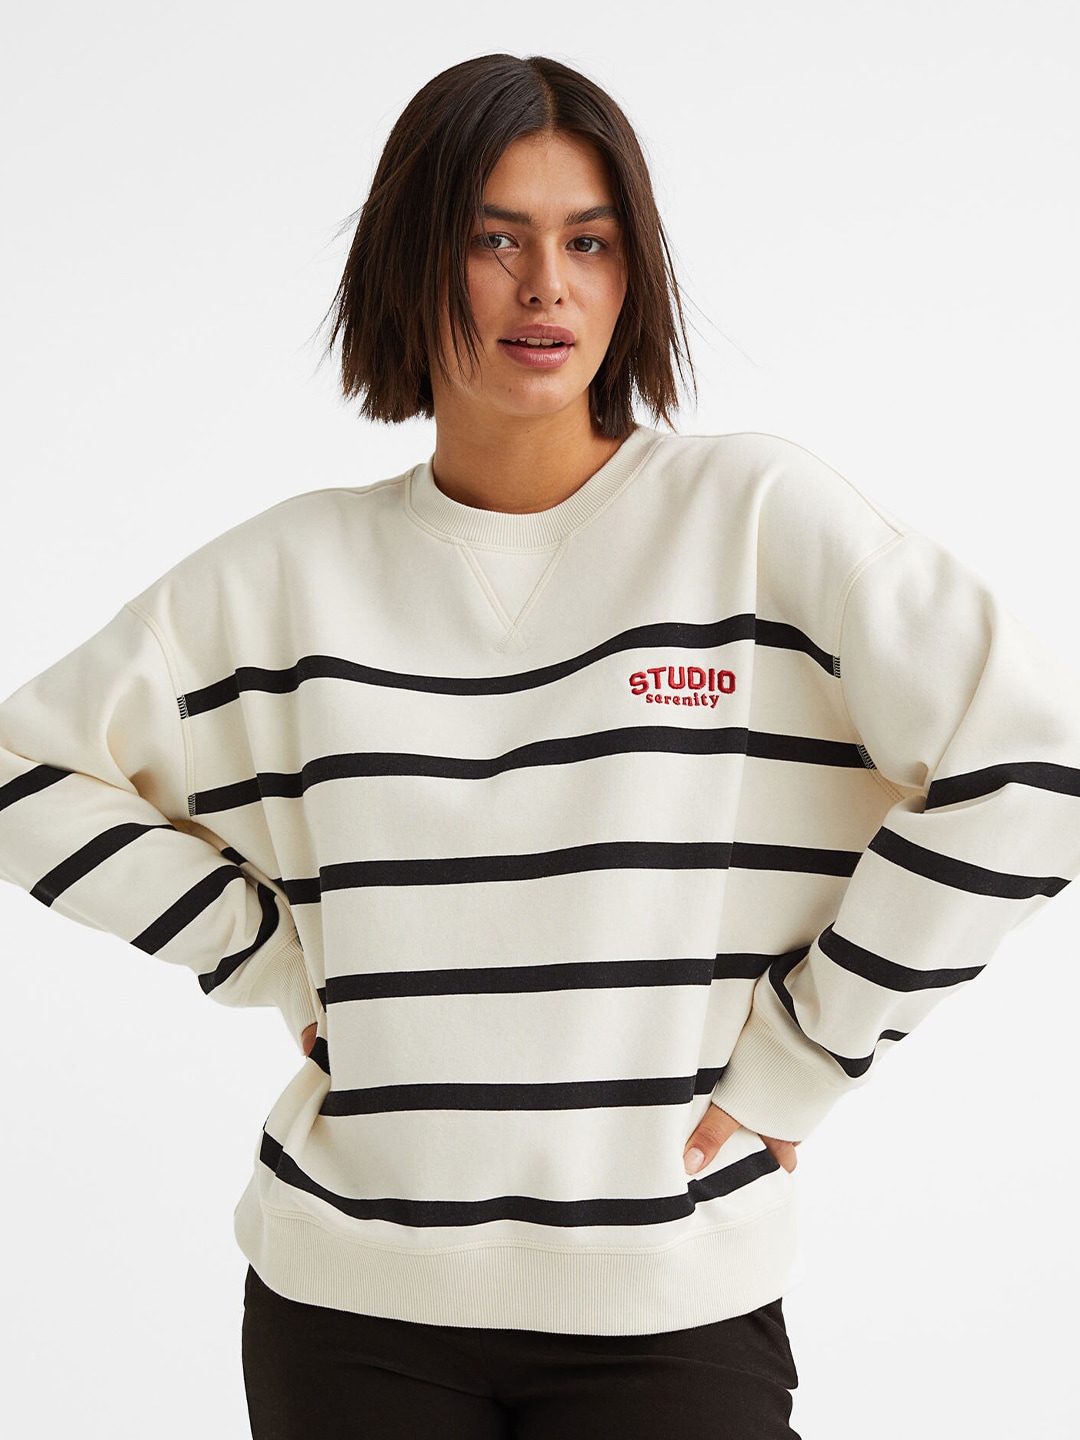 H&M Women White Printed Sweatshirt Price in India